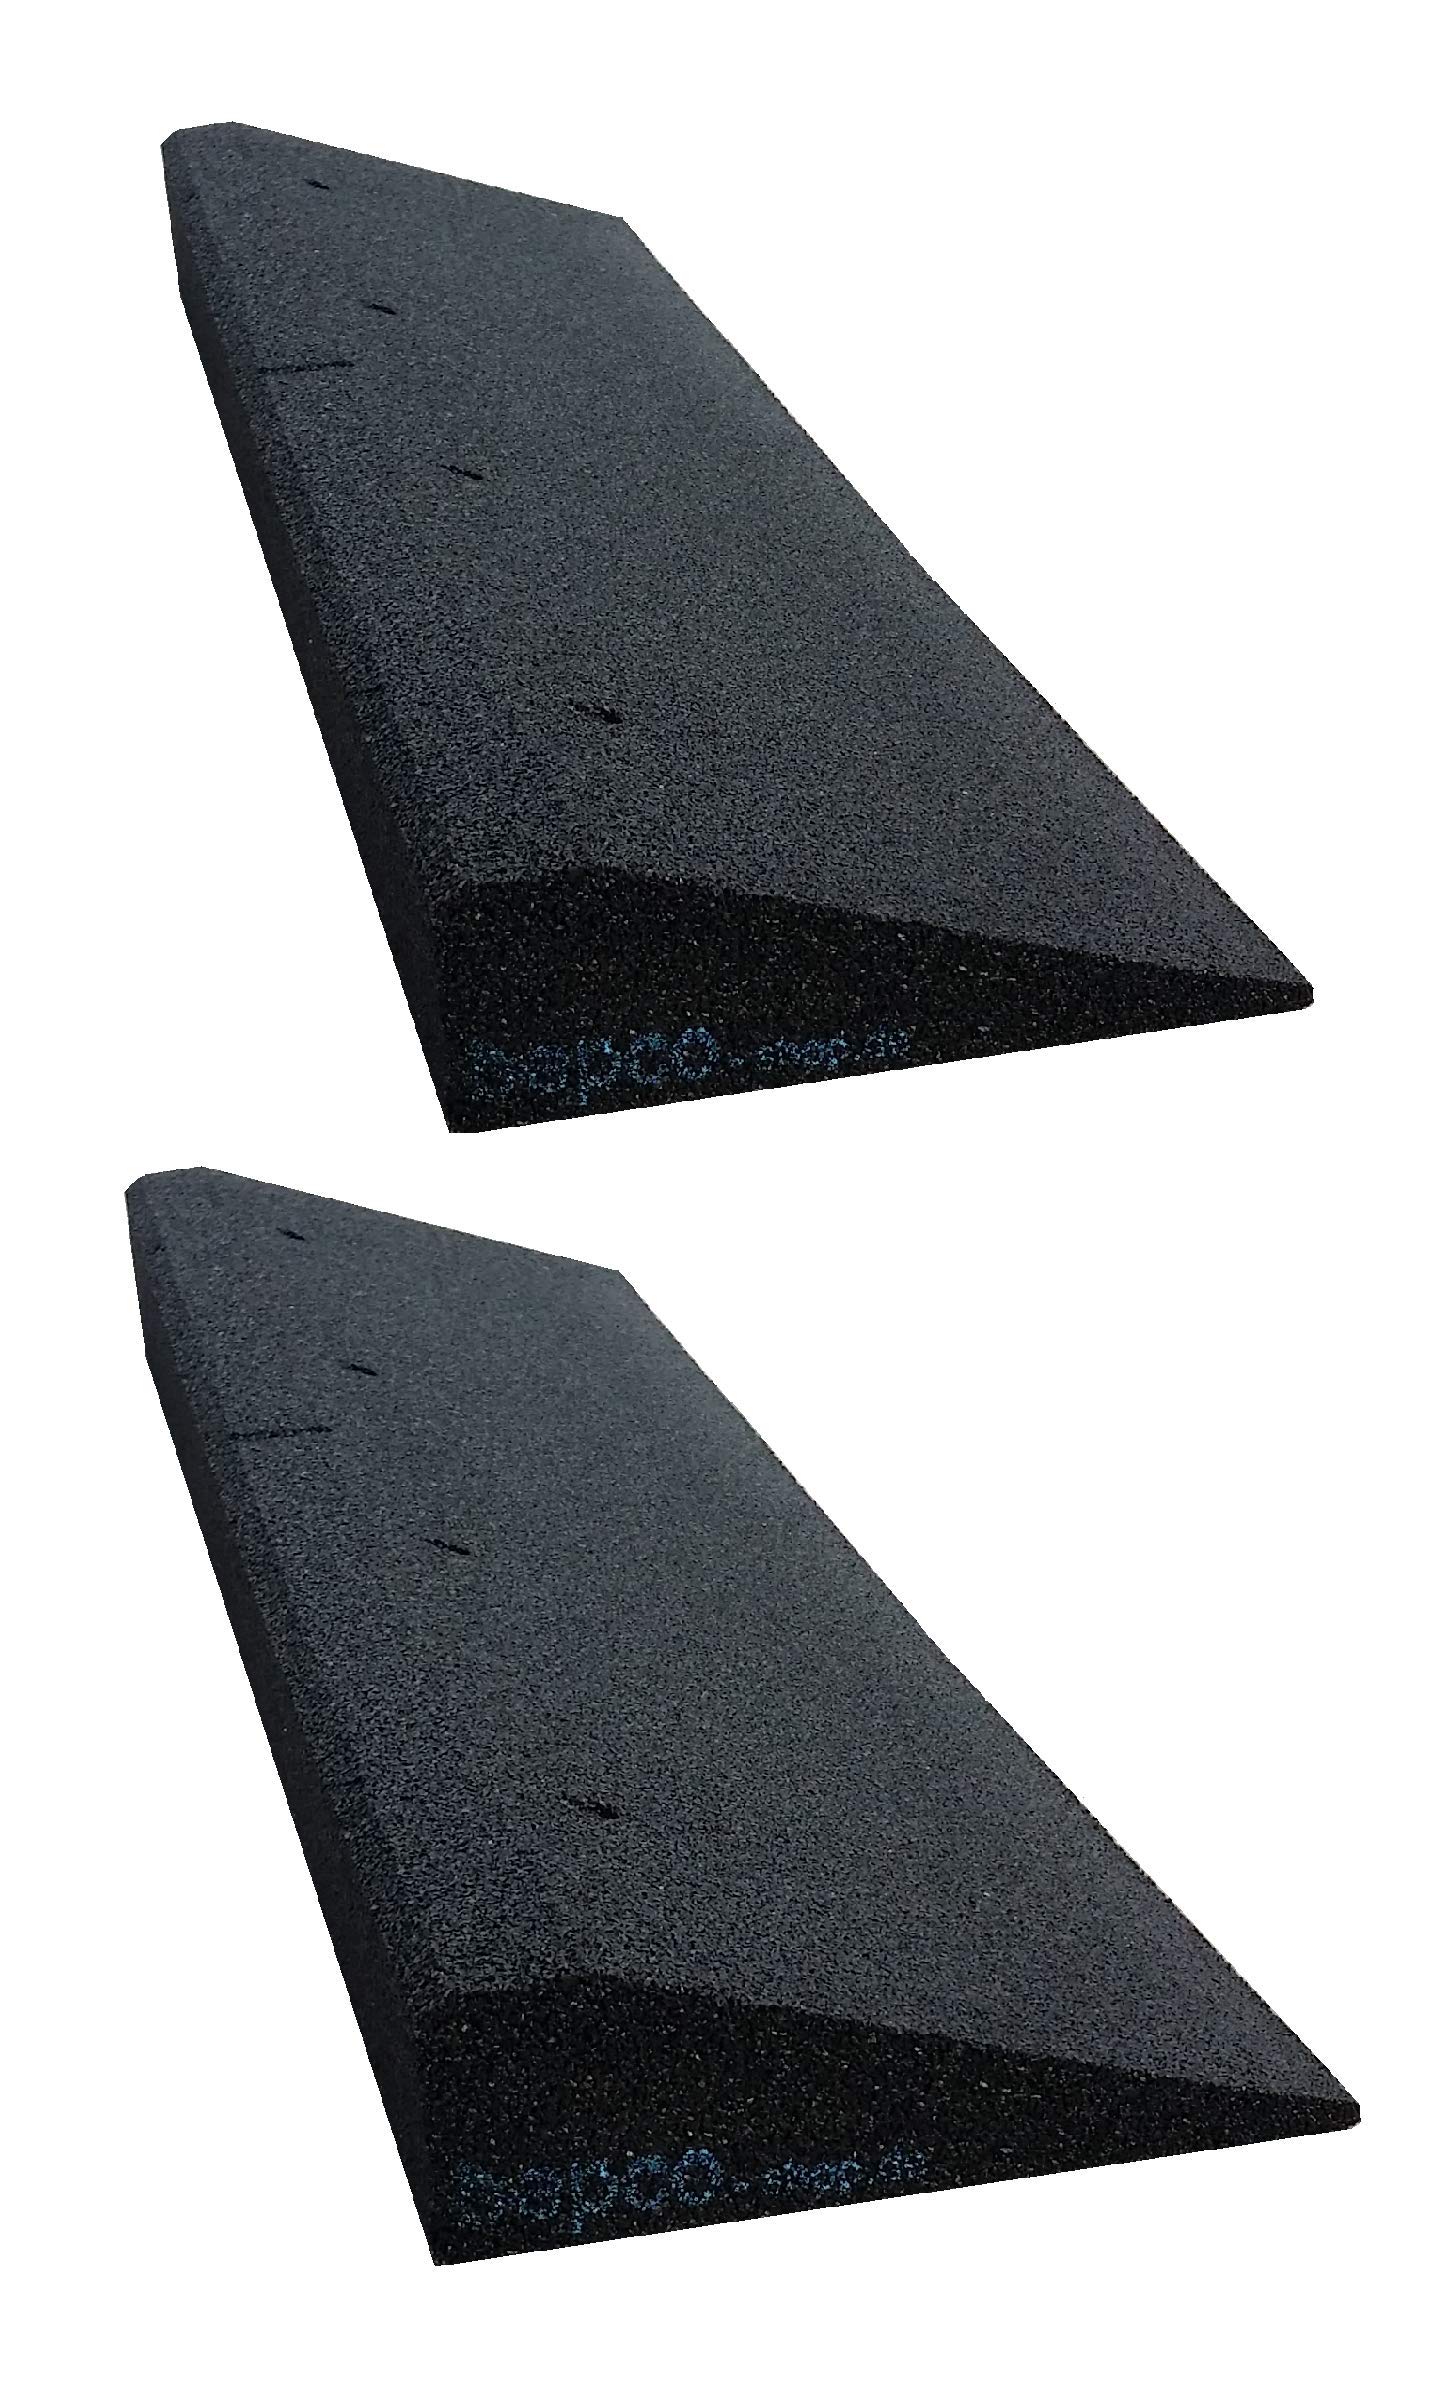 bepco Bordsteinkanten-Rampe 2er Set (2 Stück) LxBxH: 100 x 25 x 8 cm aus Gummi (schwarz) Auffahrrampe,Türschwellenrampe, mit eingelagerten Unterlegscheiben zur Befestigung